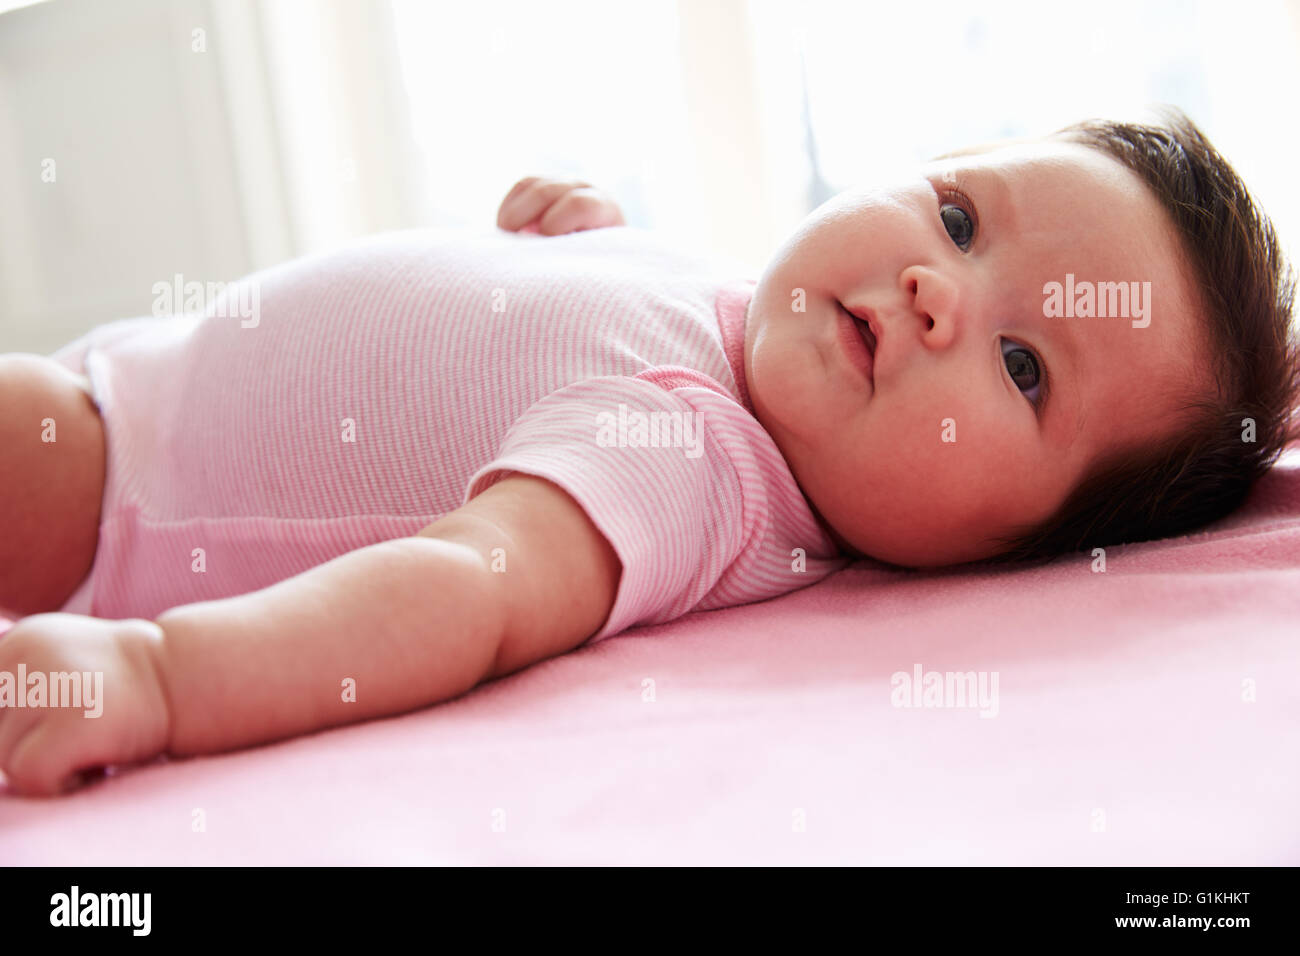 Niedliche Babymädchen rosa Decke auflegen Stockfoto